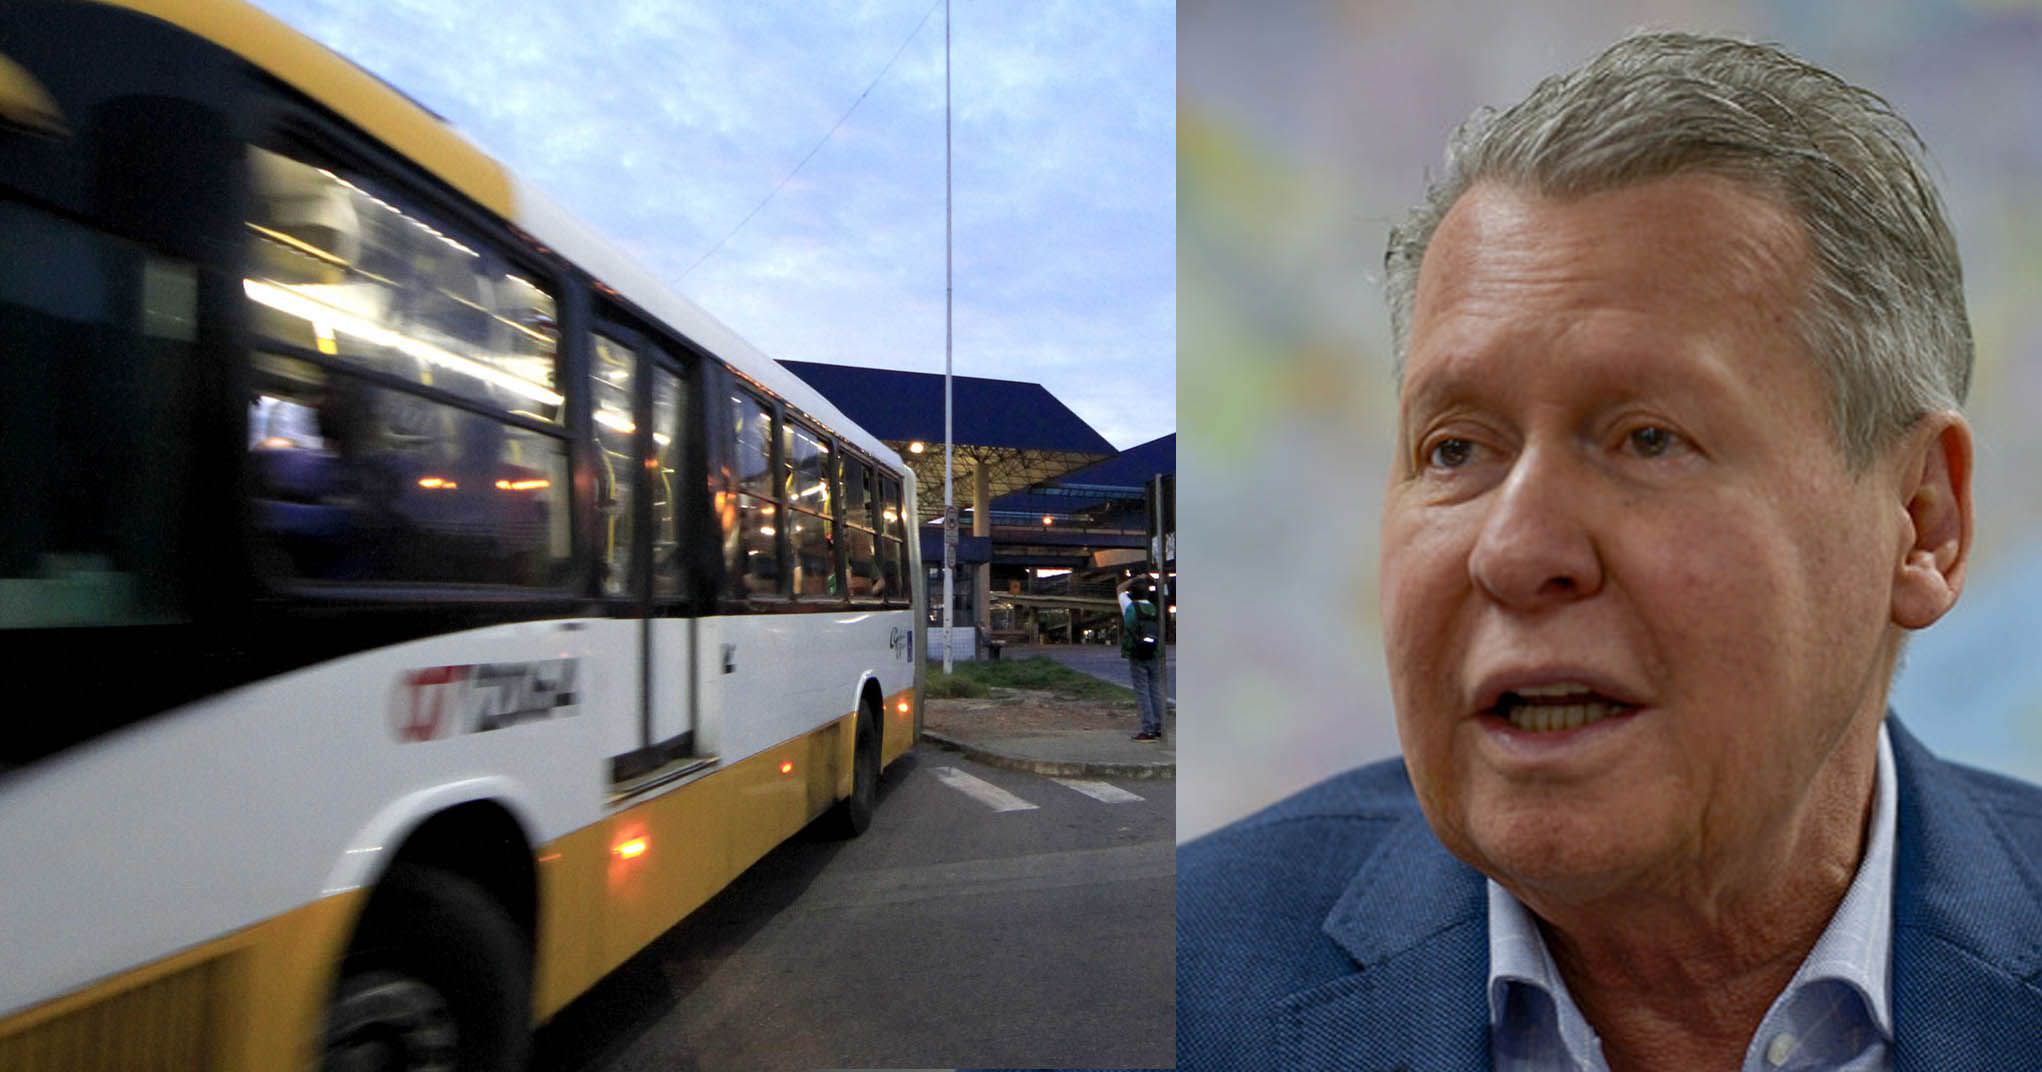 Nova greve geral dos ônibus é anunciada e rodoviários cobram promessa de Arthur Virgílio